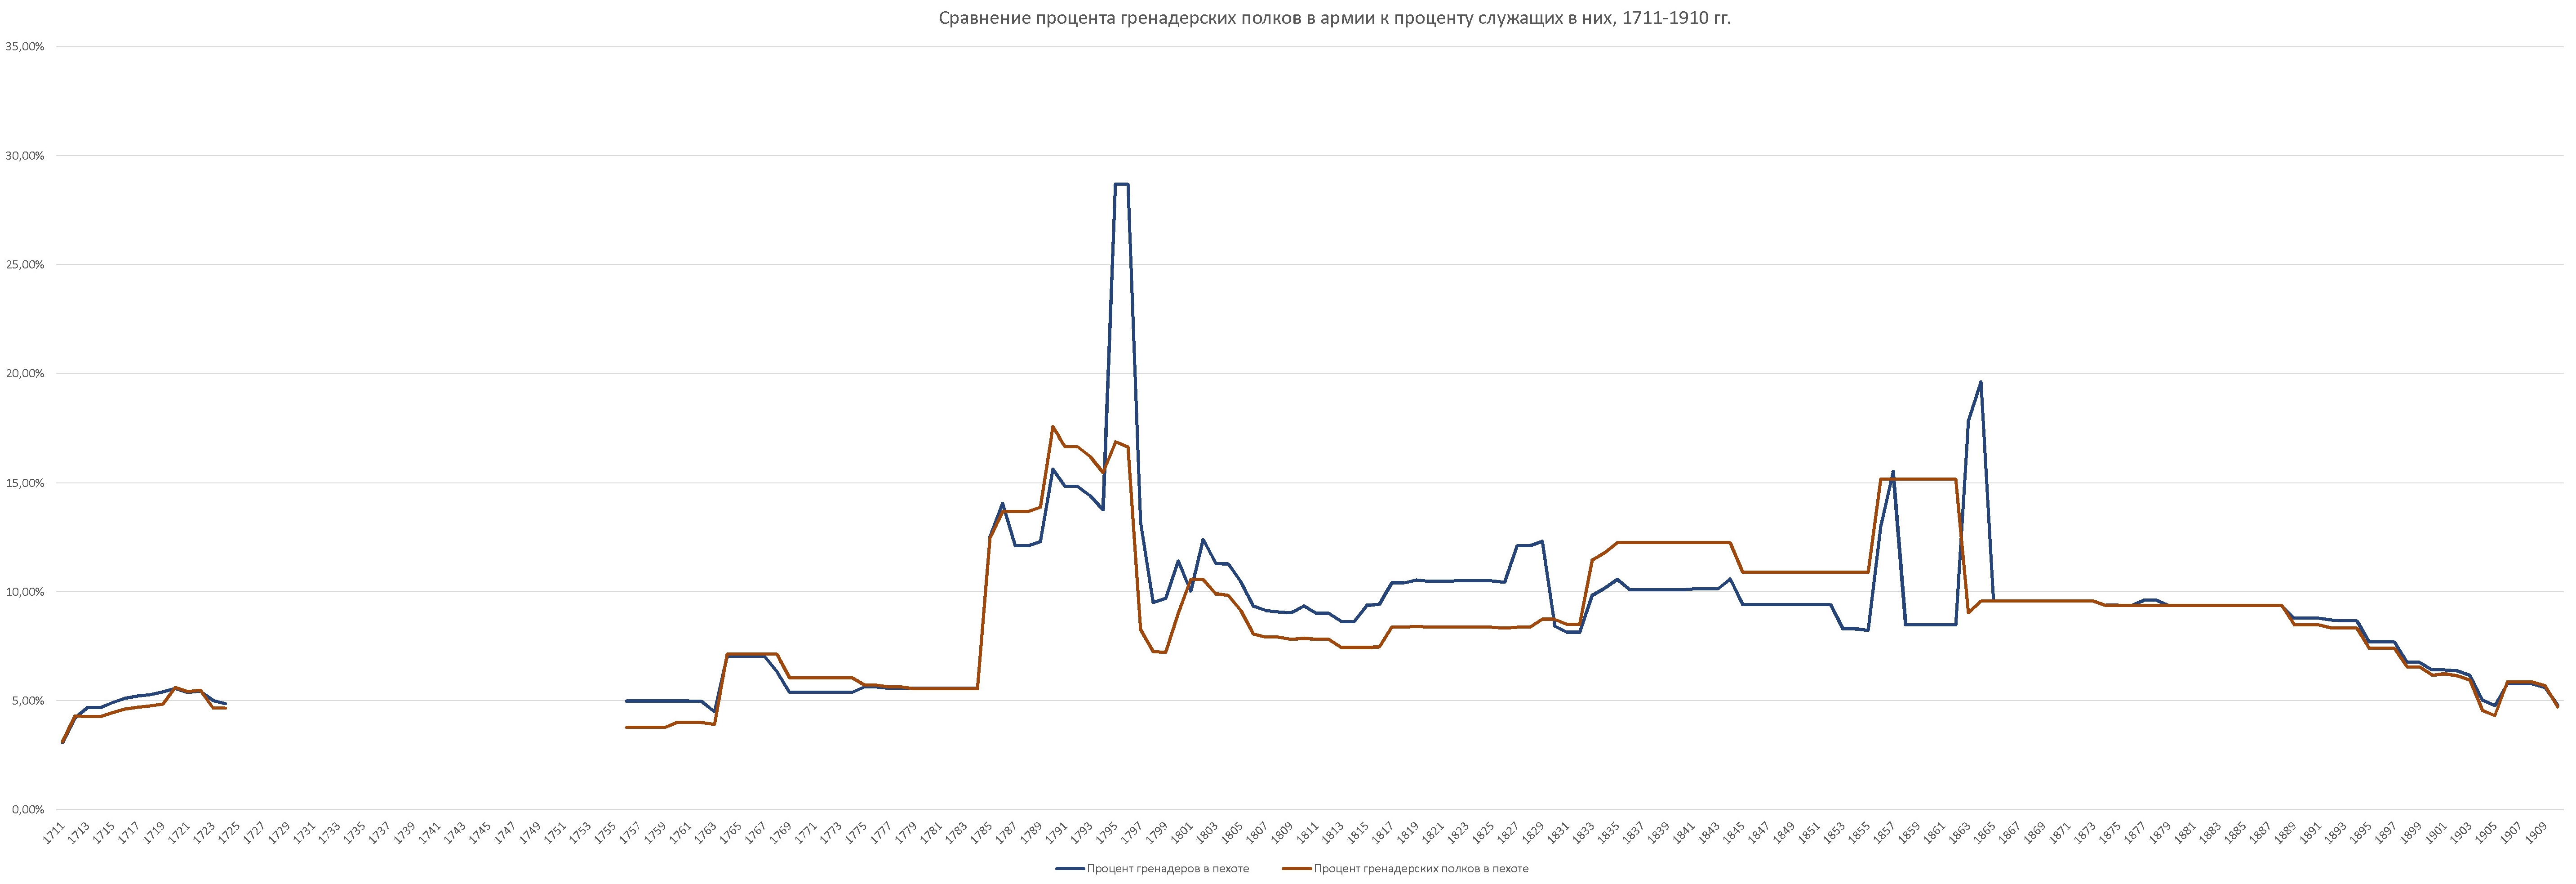 Сравнение процента гренадерских полков в русской армии к проценту служащих в них 